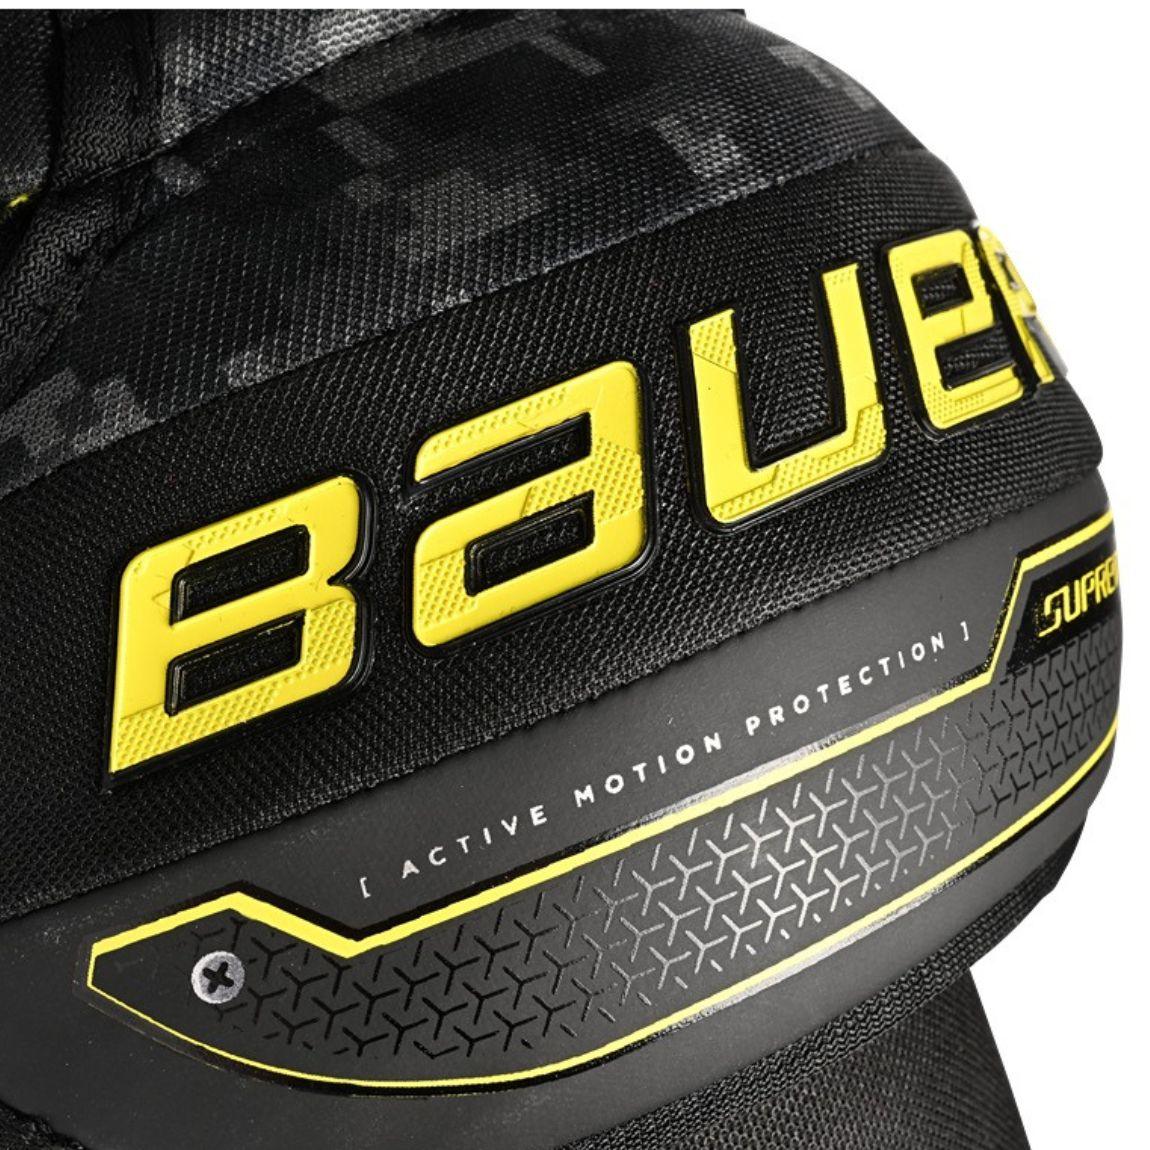 Bauer Supreme Mach Shoulder Pads